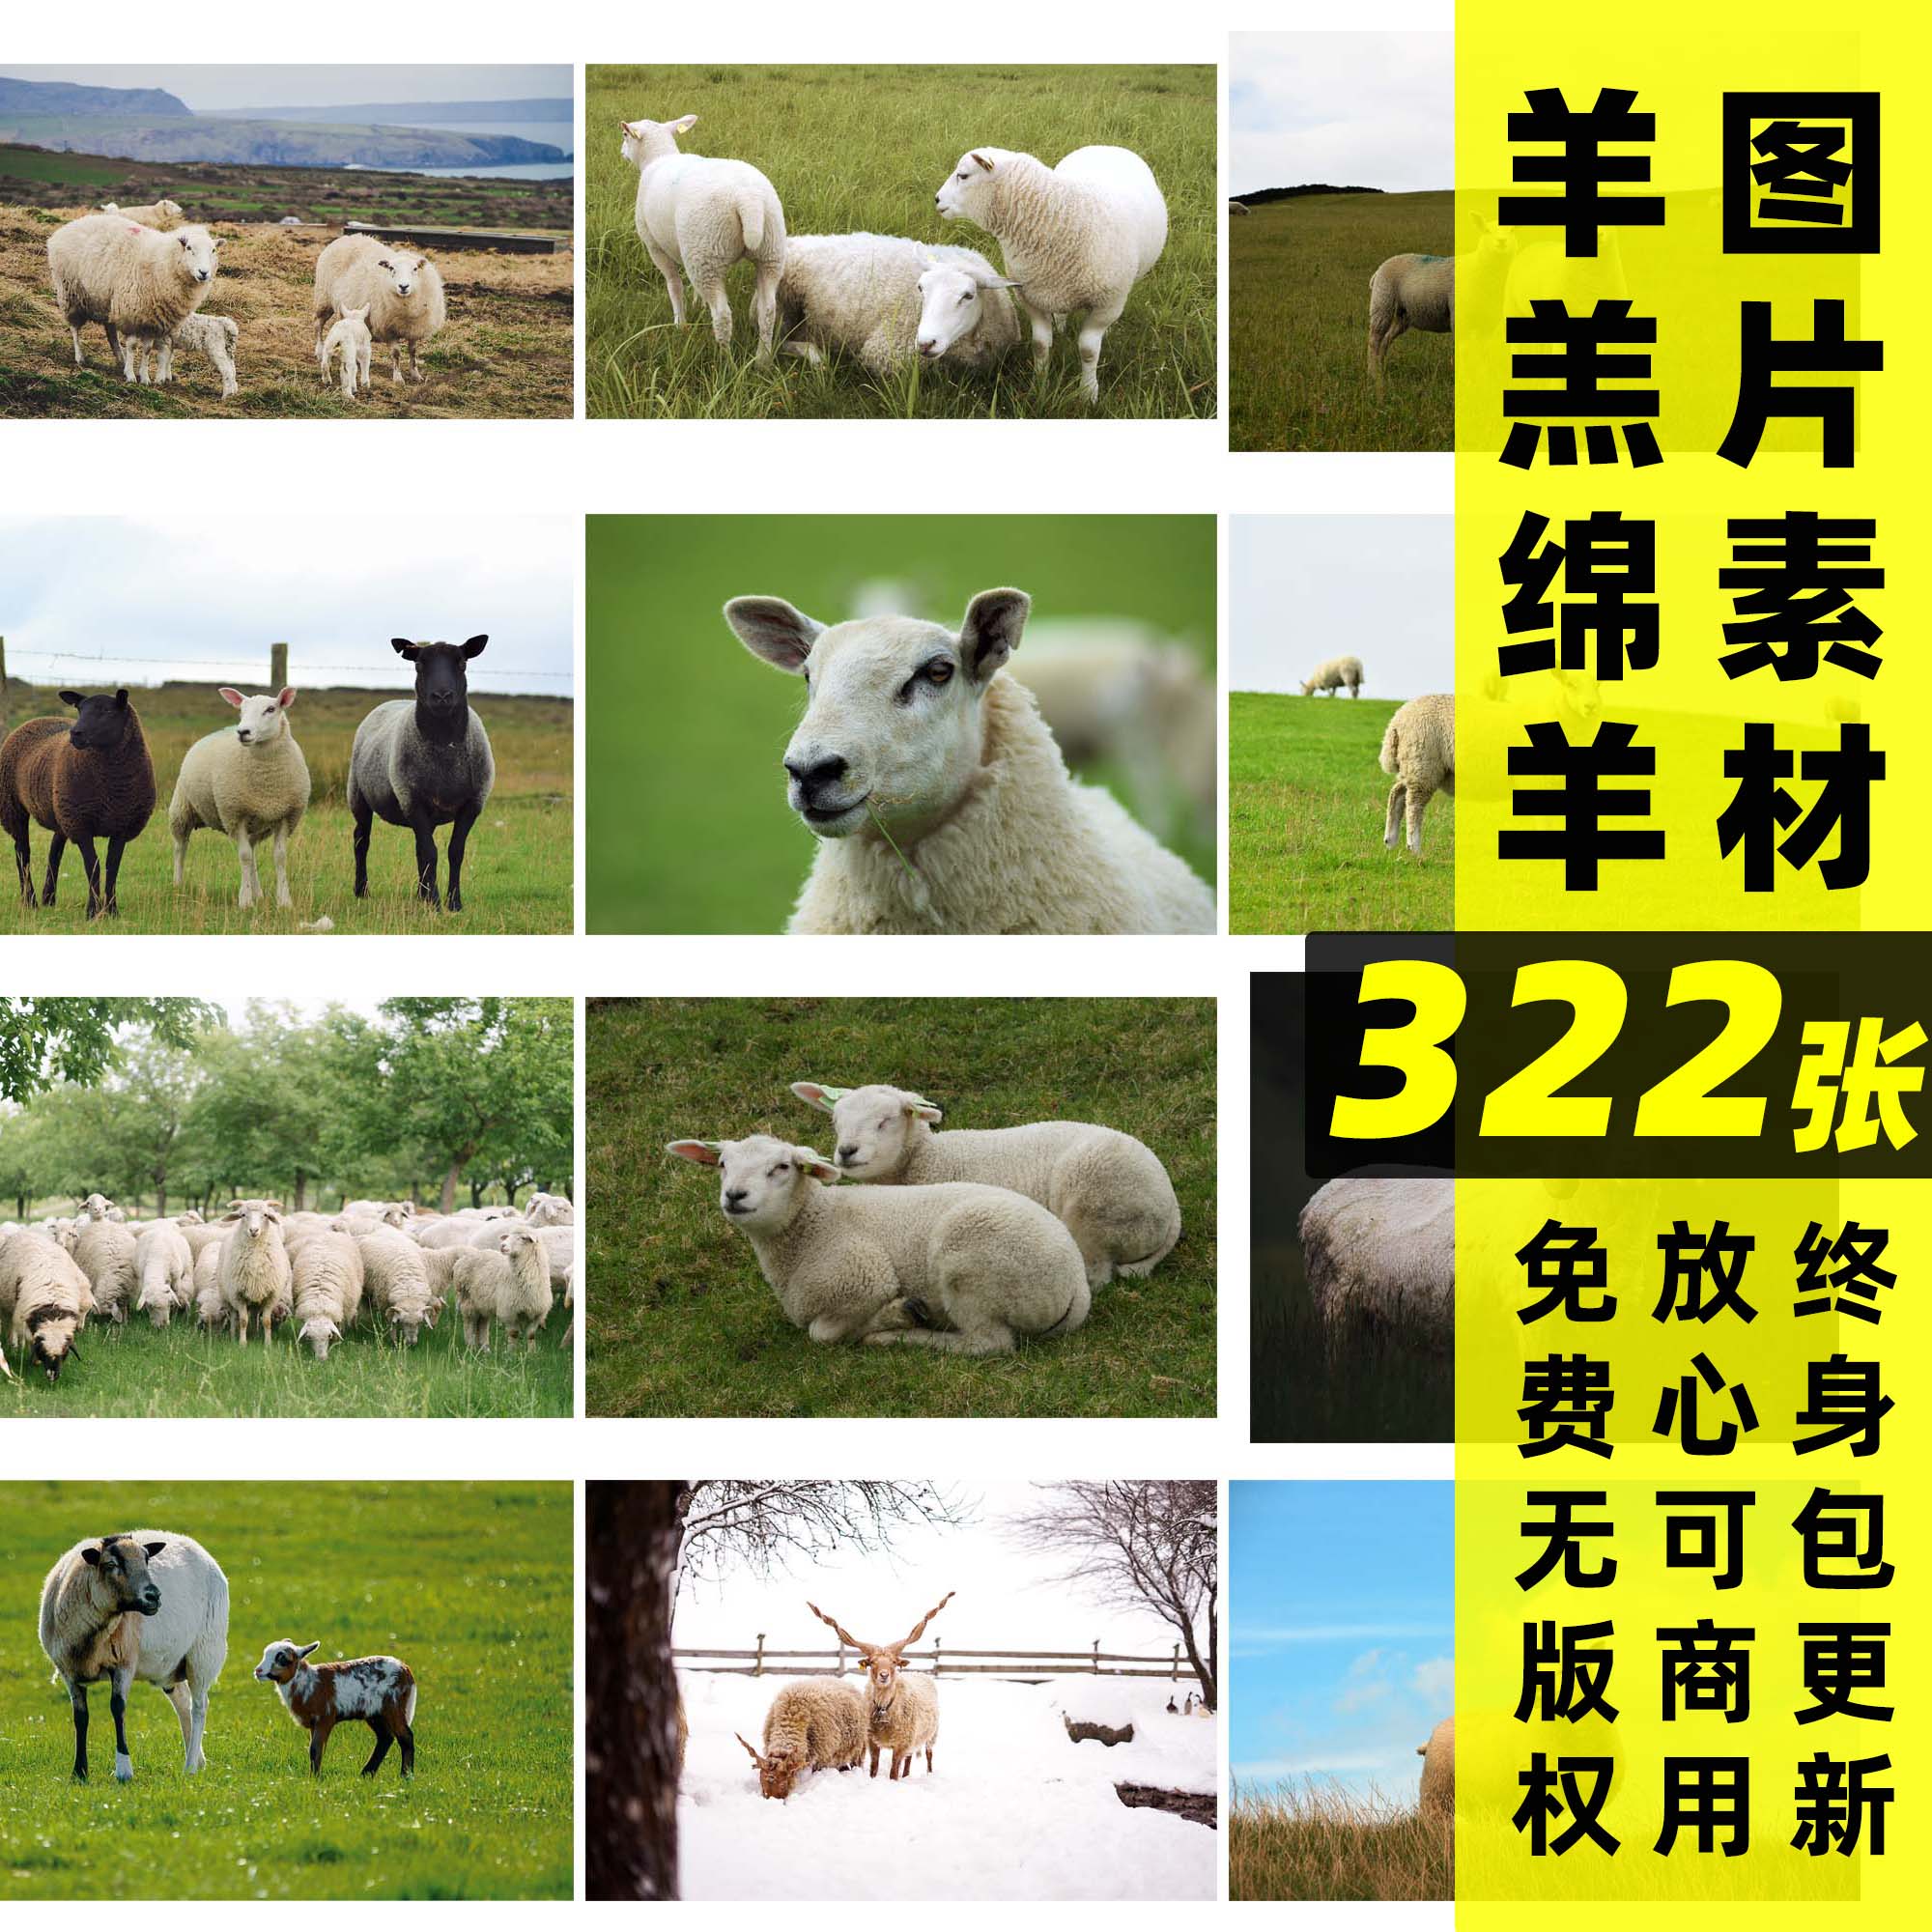 羊丨可商用羊羔山羊绵羊实拍图片素材家畜动物超清高清无版权图片